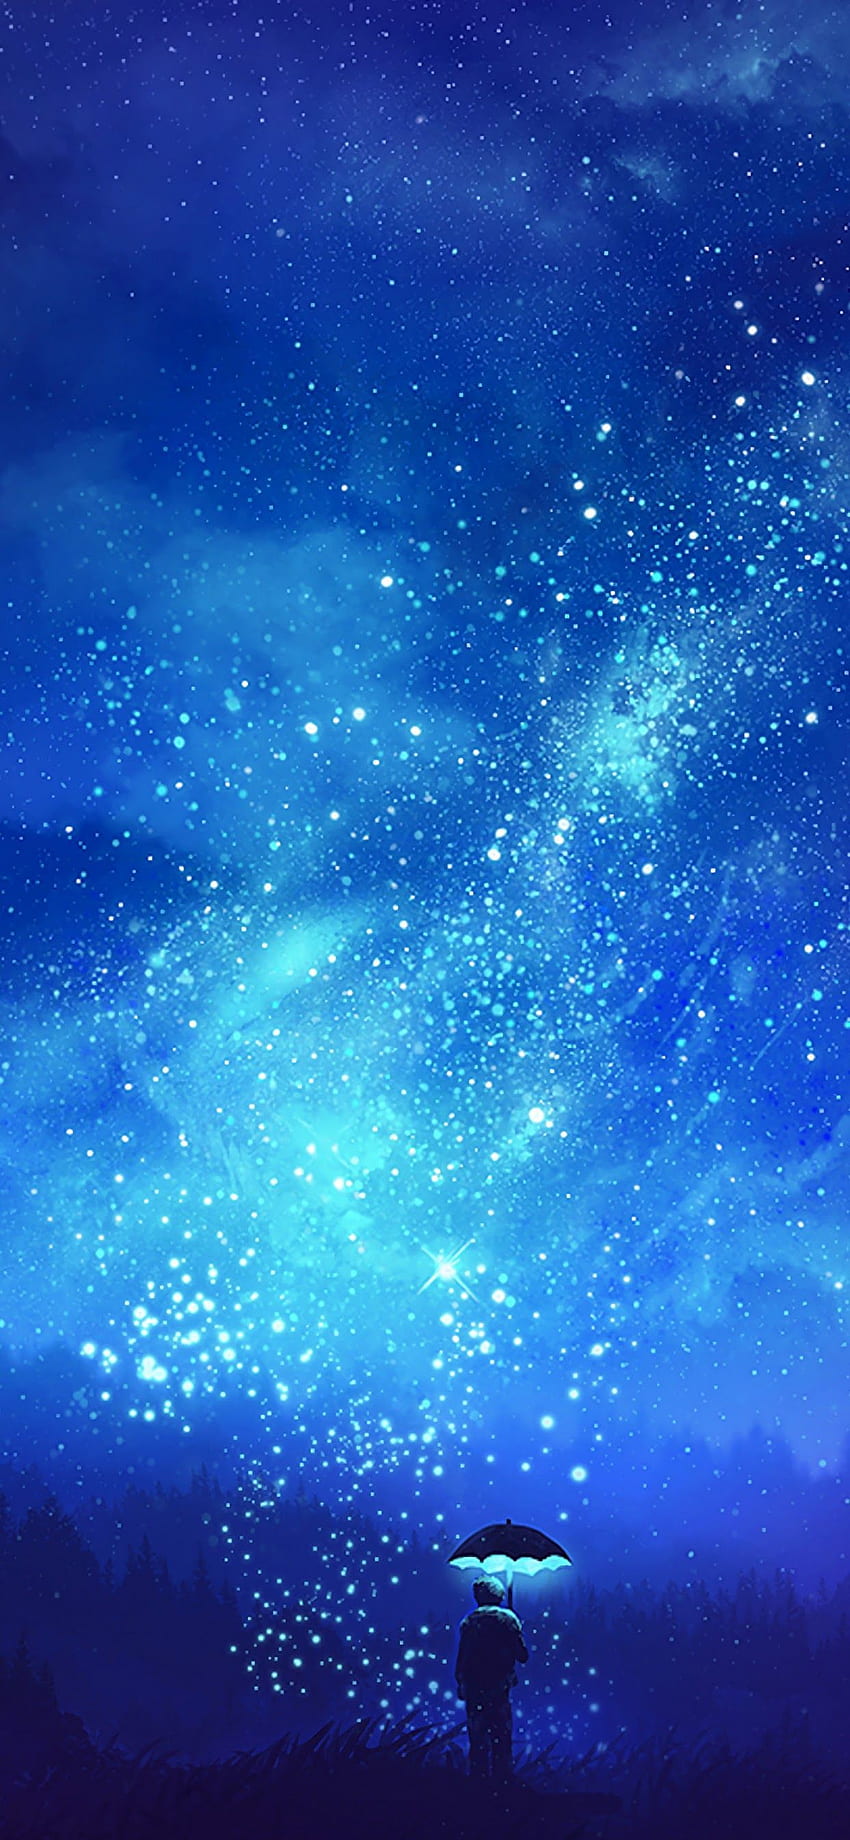 Zobacz tło nocnego nieba anime. Nocne niebo, tło, nocne niebo, anime gwiaździste niebo Tapeta na telefon HD